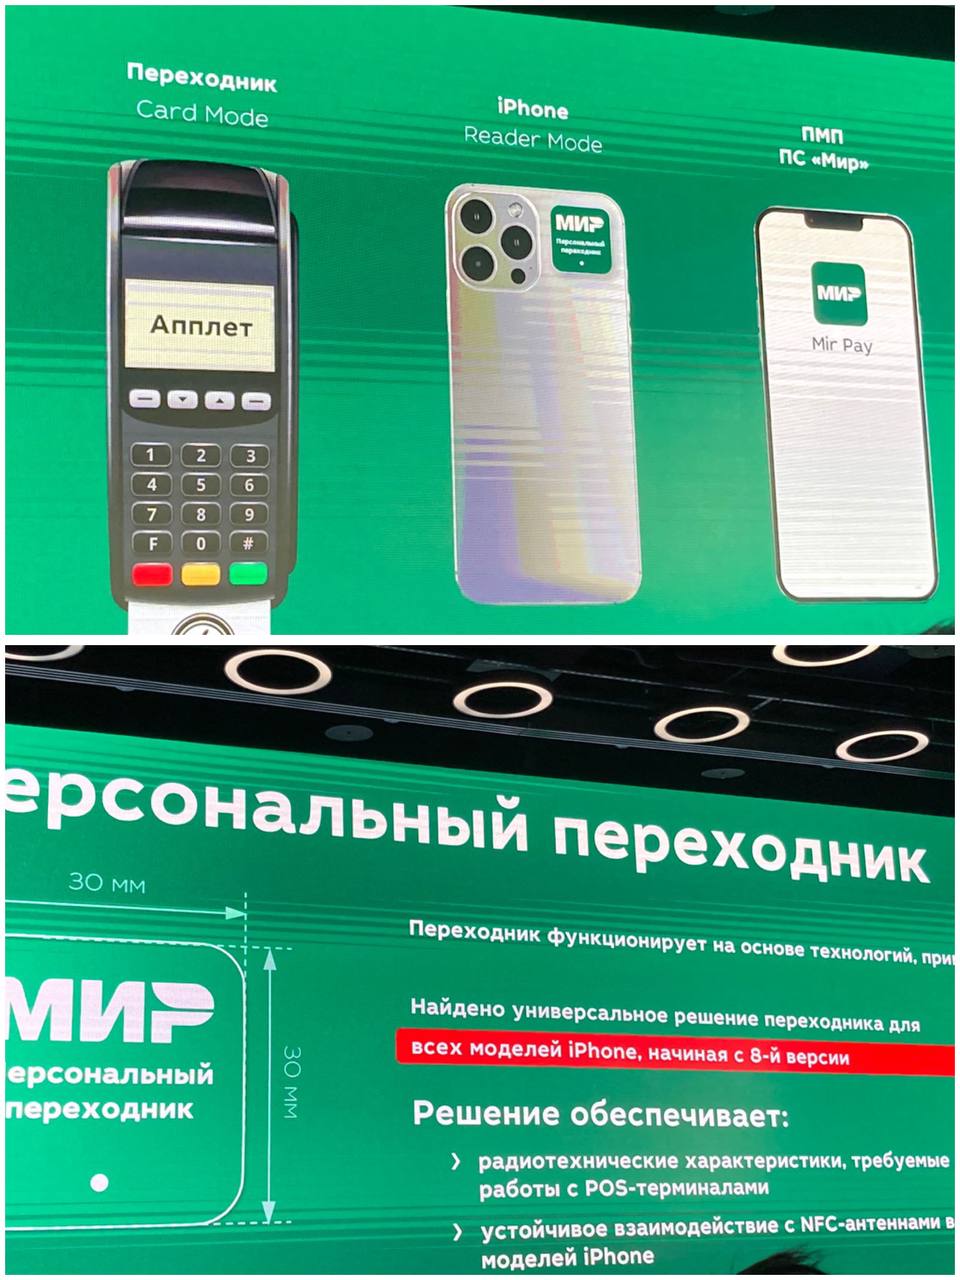 НСПК разрабатывает специальный «переходник» на iPhone для оплаты картами «МИР»